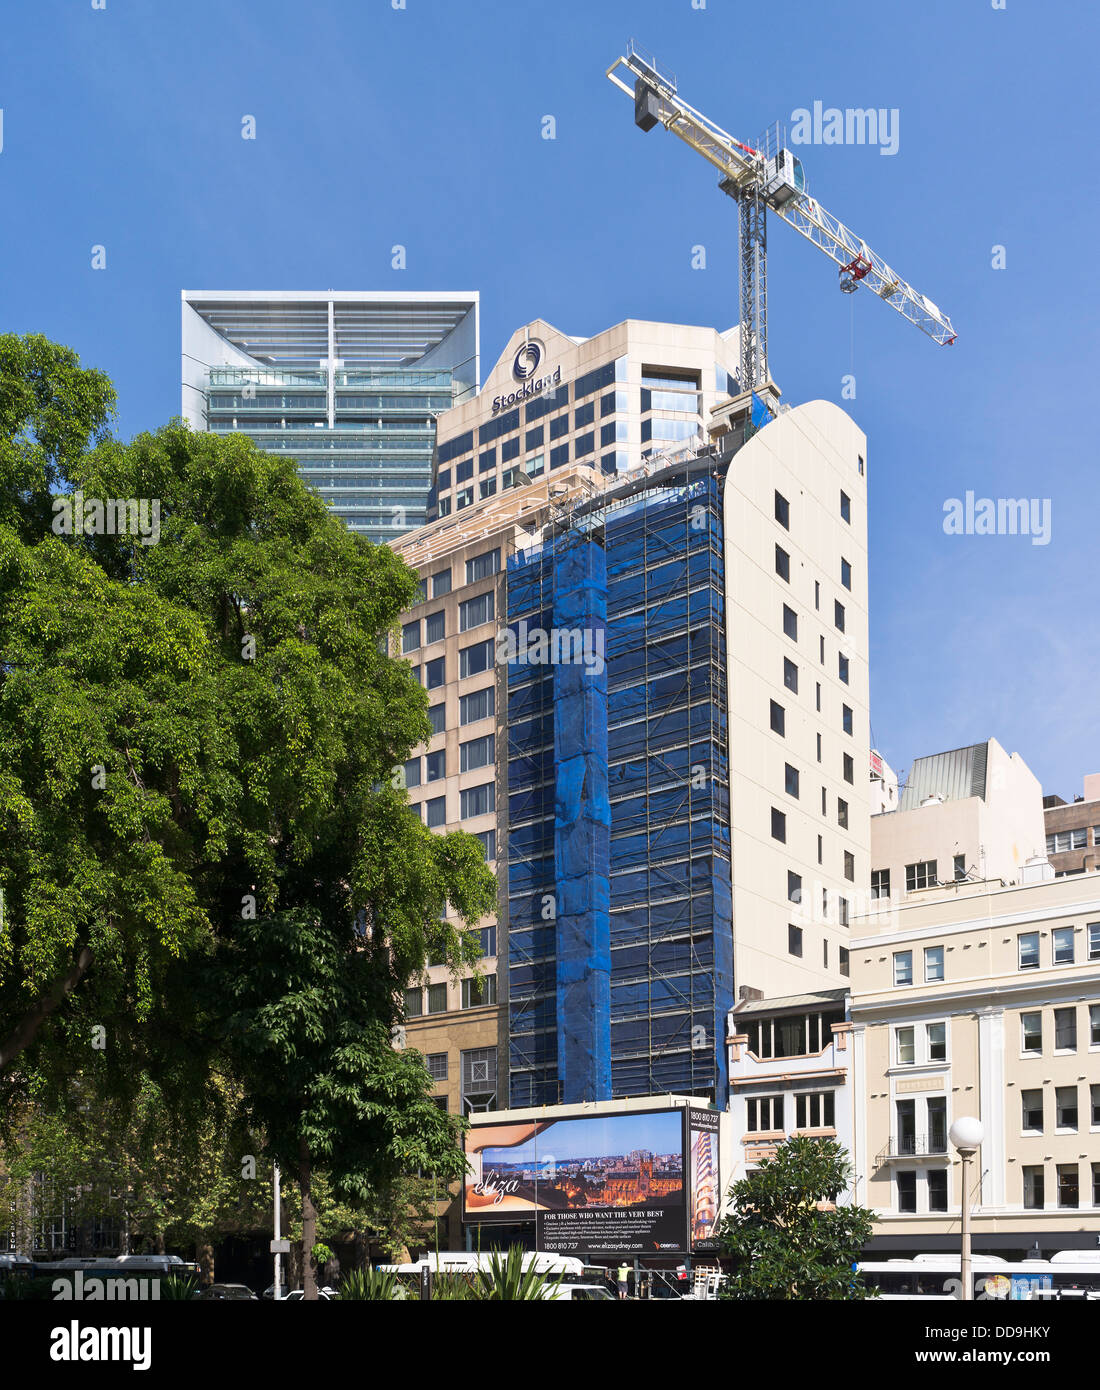 Dh sydney Australien Wolkenkratzer Baukran im Bau Stockfoto